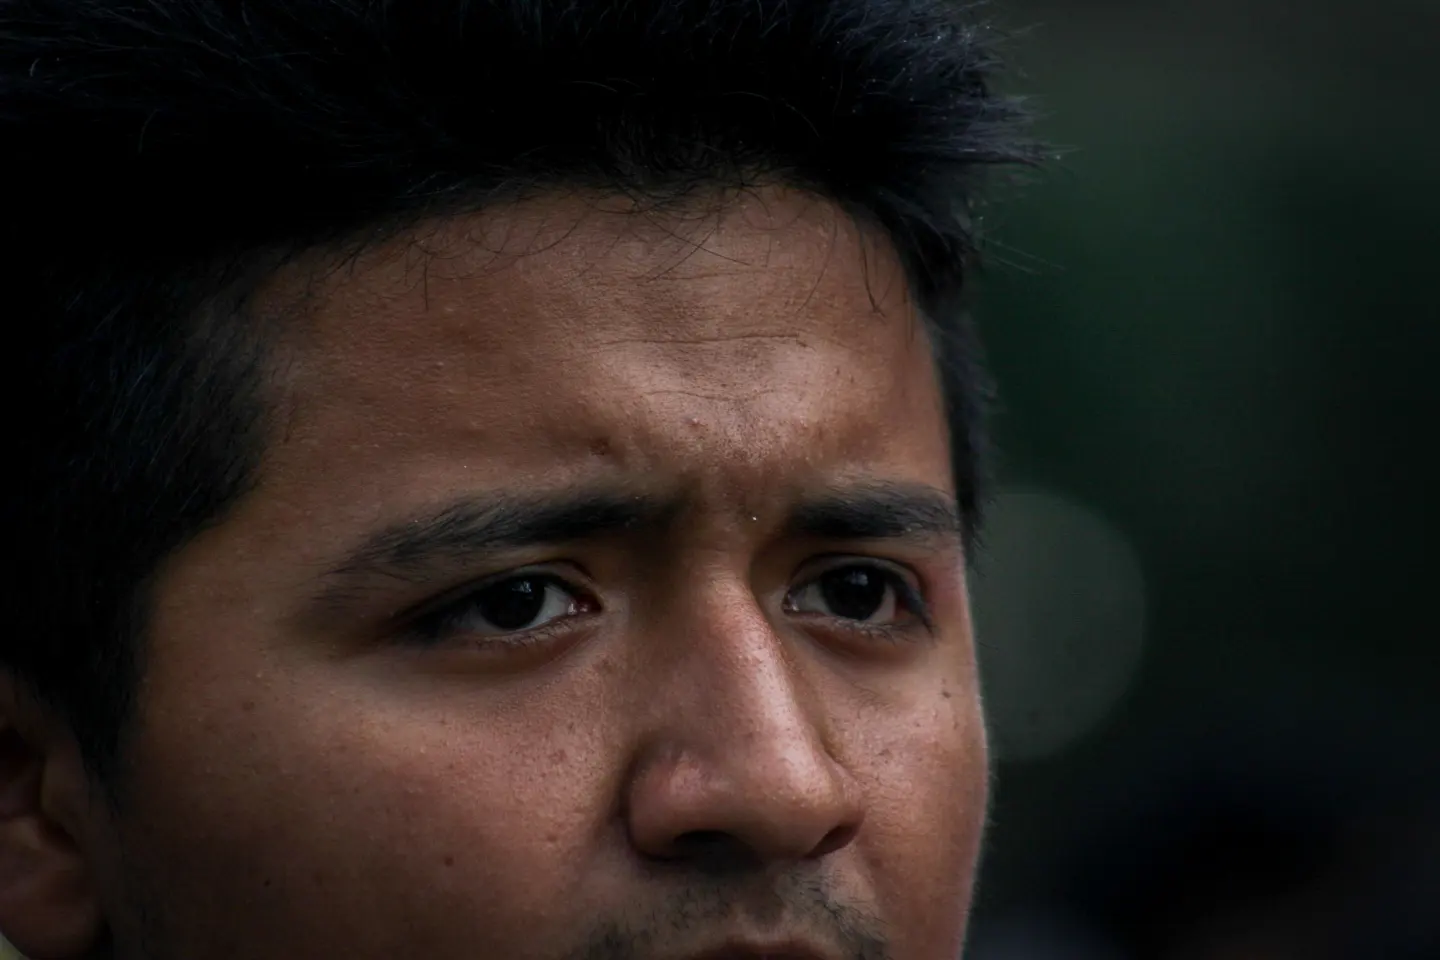 En la 117 Acción Global por Ayotzinapa y México, los padres y madres de los 43 normalistas demostraron su indignación ante la falta de autoridad y respuesta hacia la investigación de la desaparición forzada durante el mandato de Andrés Manuel López Obrador.